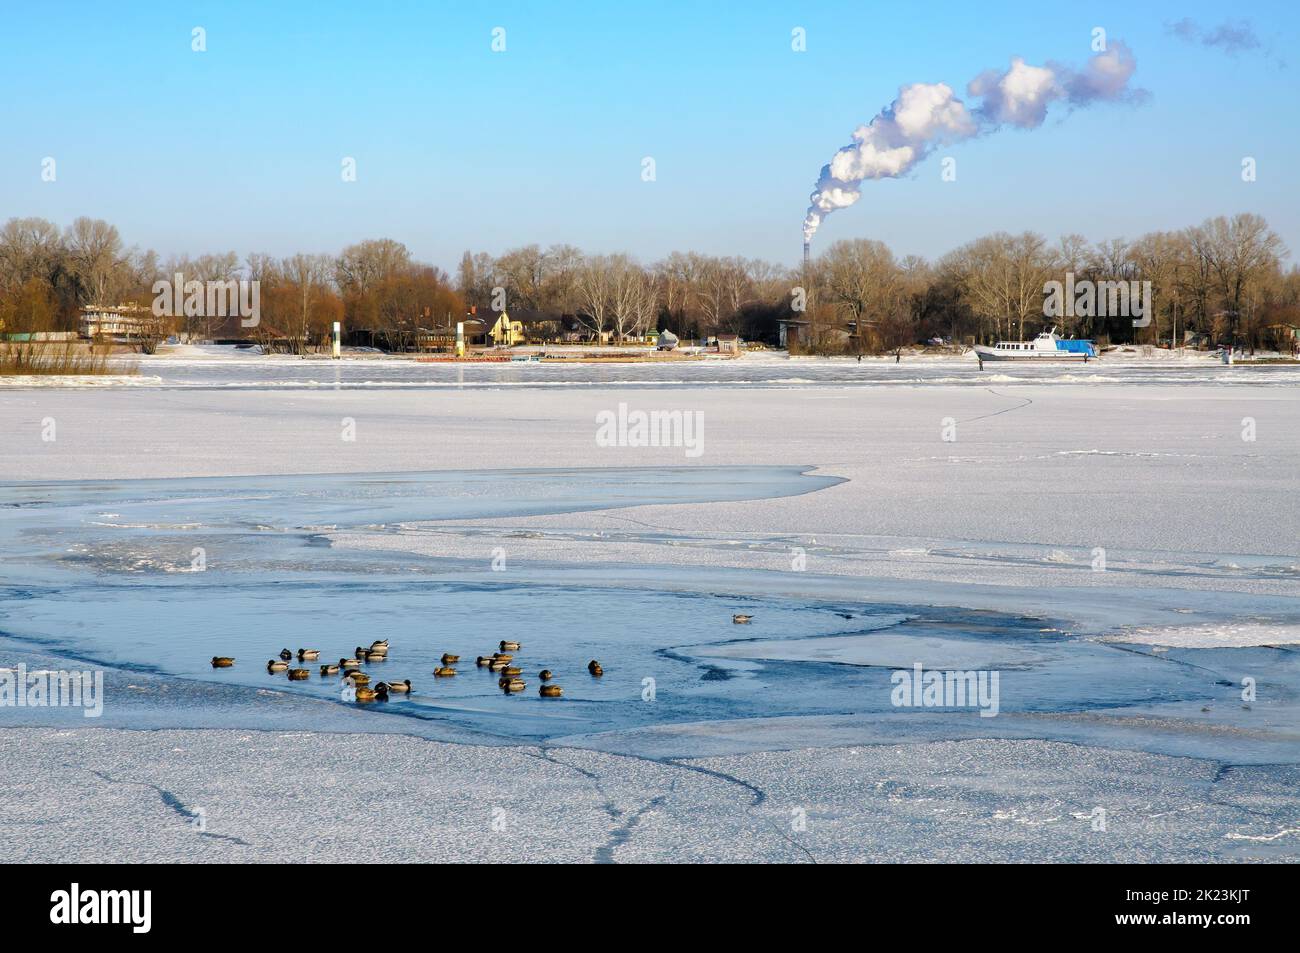 Landschaft mit gefrorenem Wasser, Eis und Schnee auf dem Fluss Dnjepr in Kiew, Ukraine, im Winter ruhen Ducks auf dem Eis Stockfoto